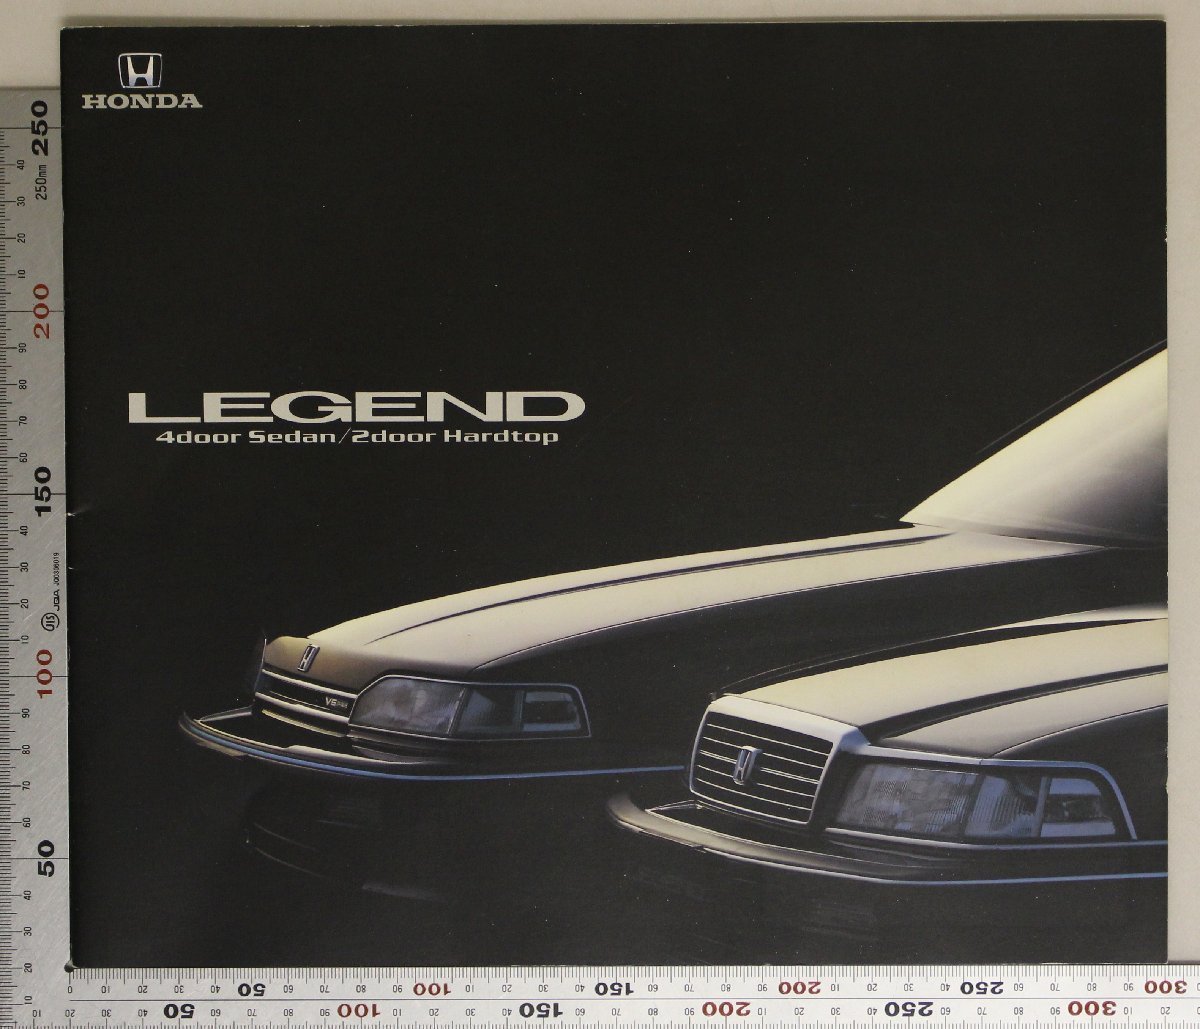 自動車カタログ『LEGEND 4door Sedan/2Door Hardtop』1989年7月 HONDA 補足ホンダレジェンドV6-24バルブエンジン4輪ダブルウィッシュボーン_画像1